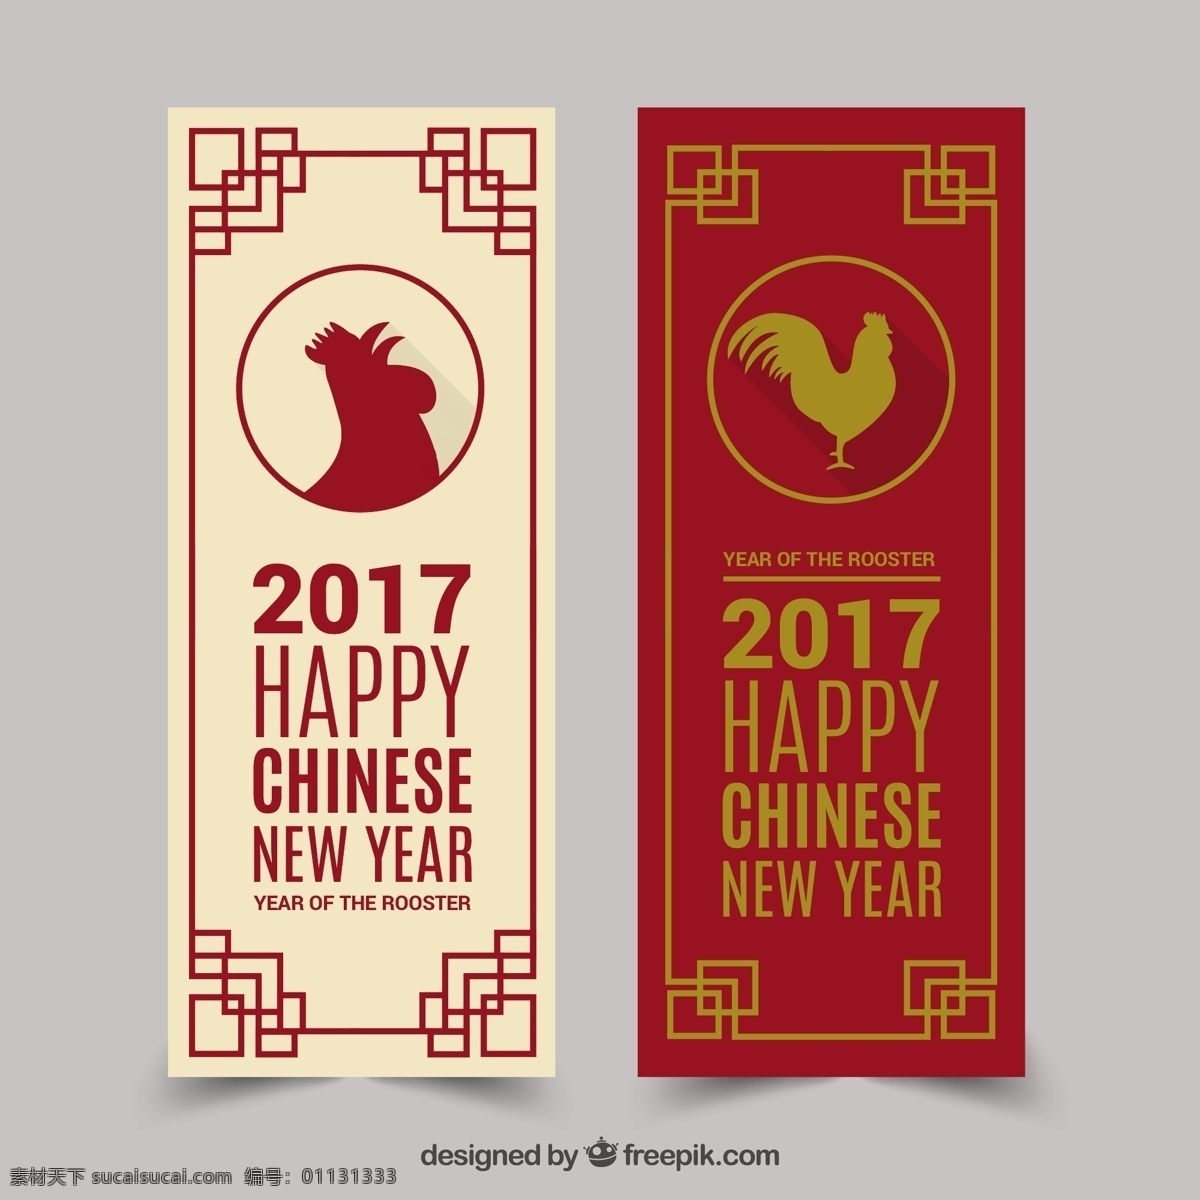 中国 新年 横幅 几何 框架 公鸡 旗帜 冬天 新年快乐 2017方 动物 中国新年 庆祝 快乐 节日 活动 节日快乐 平